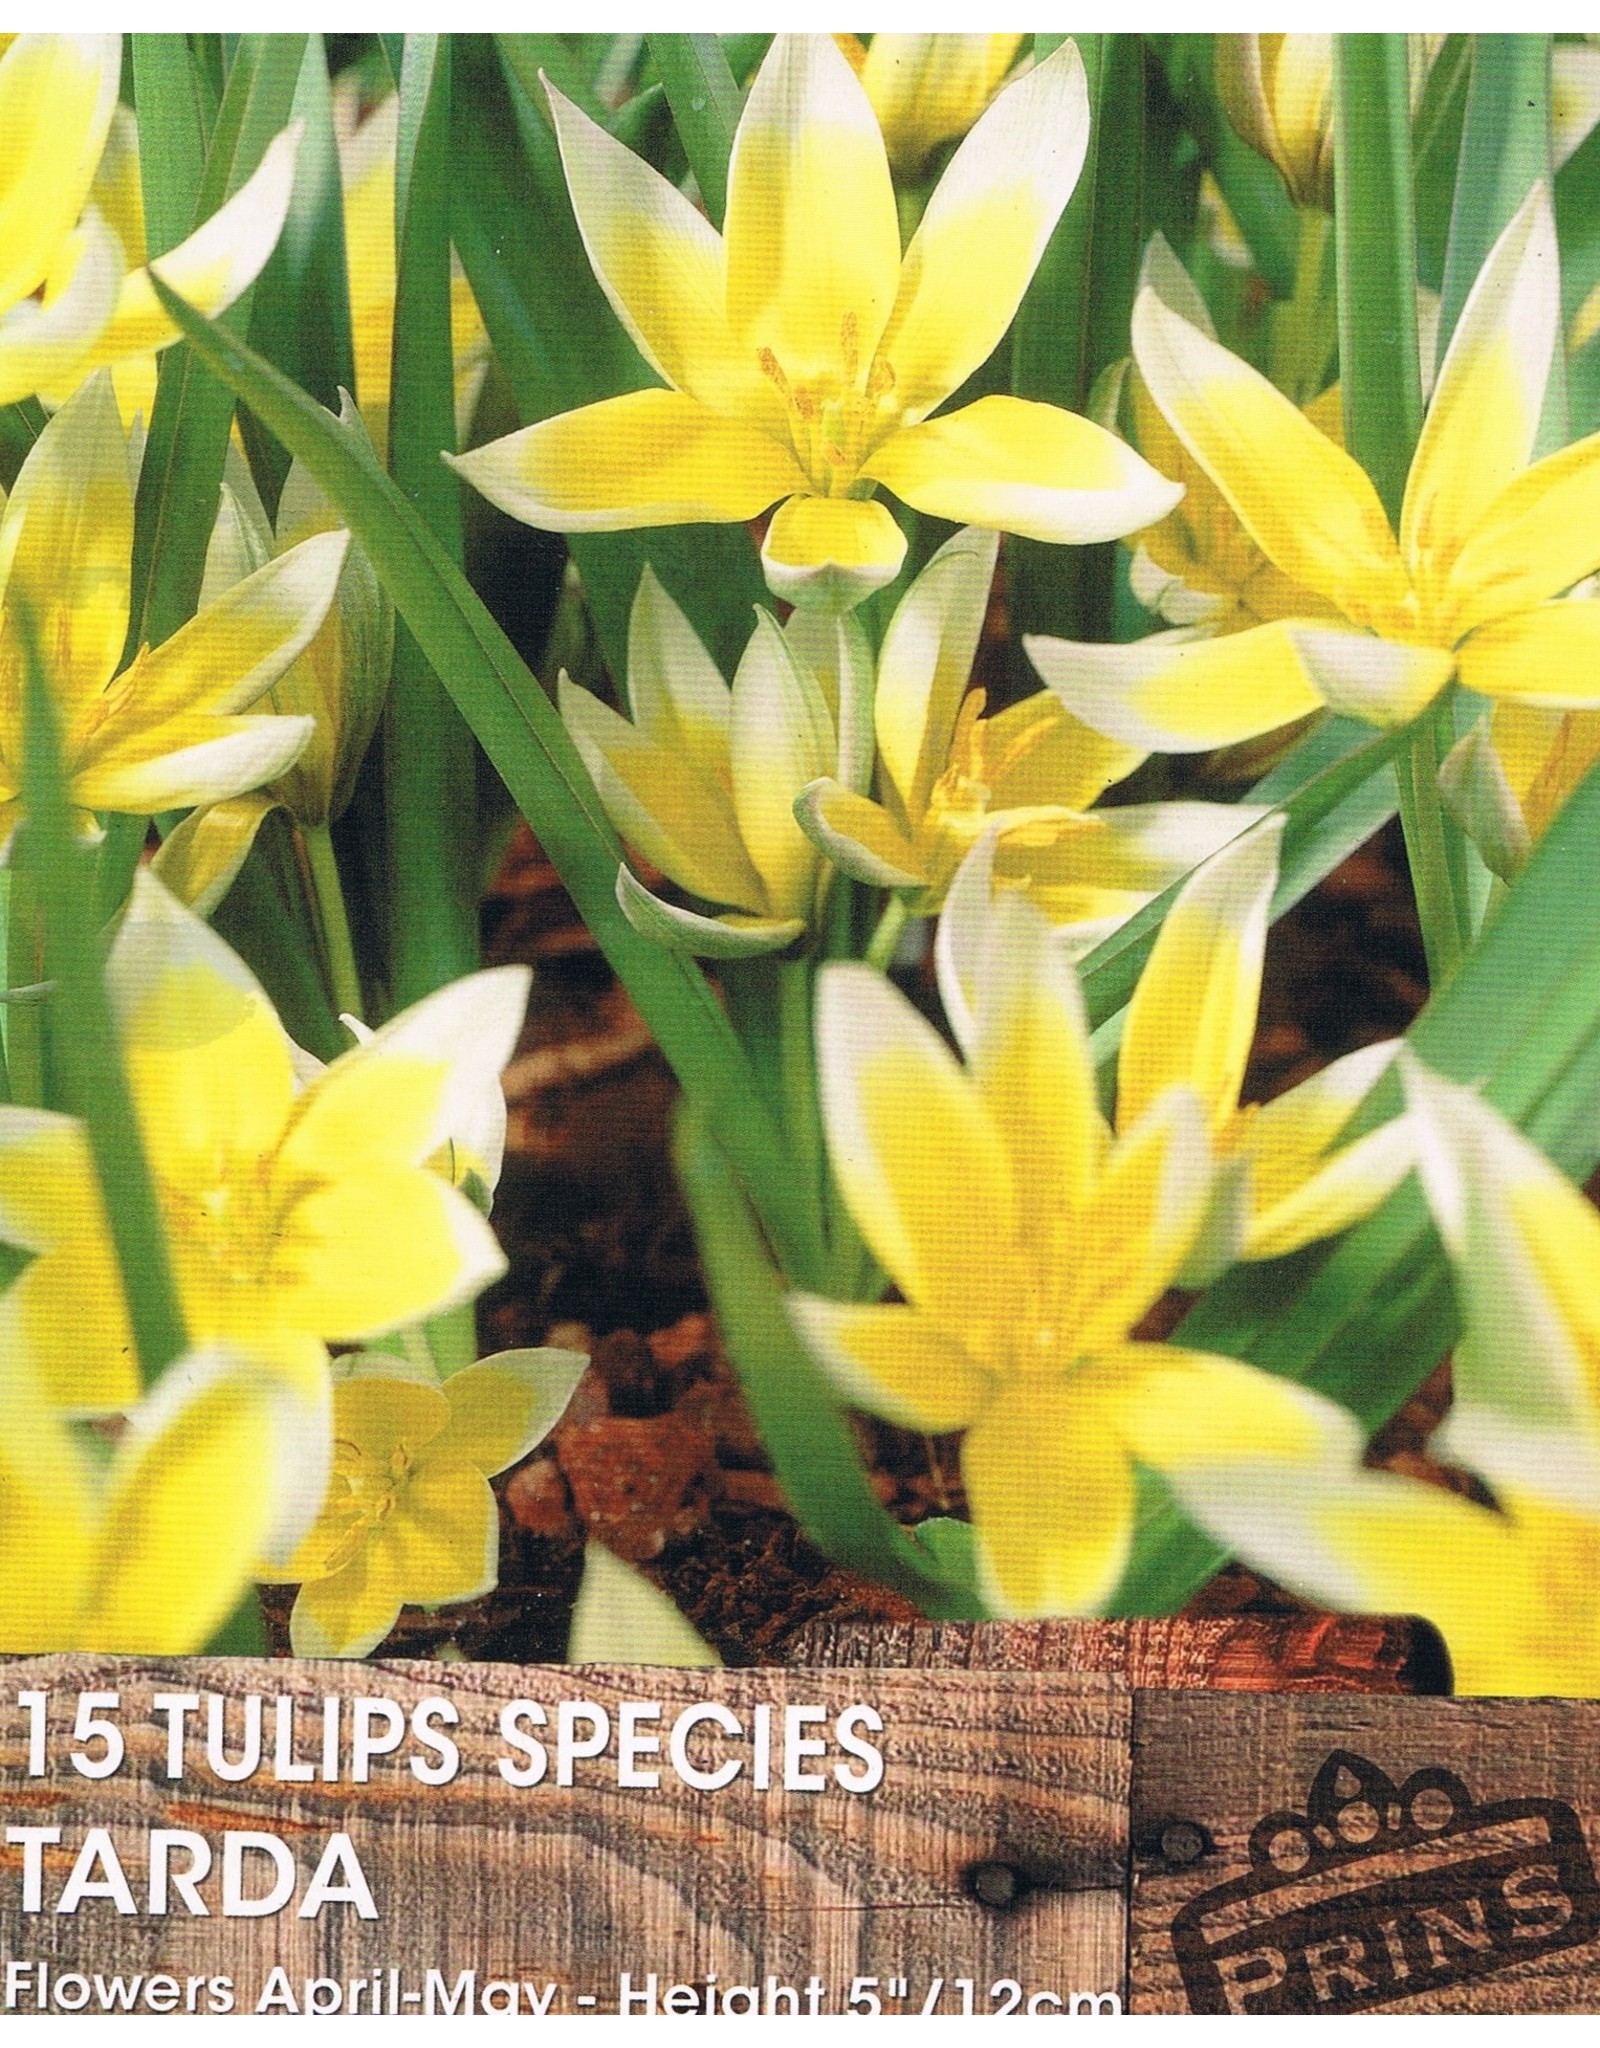 Hollands geteeld Speels laag tulpje met frisse kleuren!